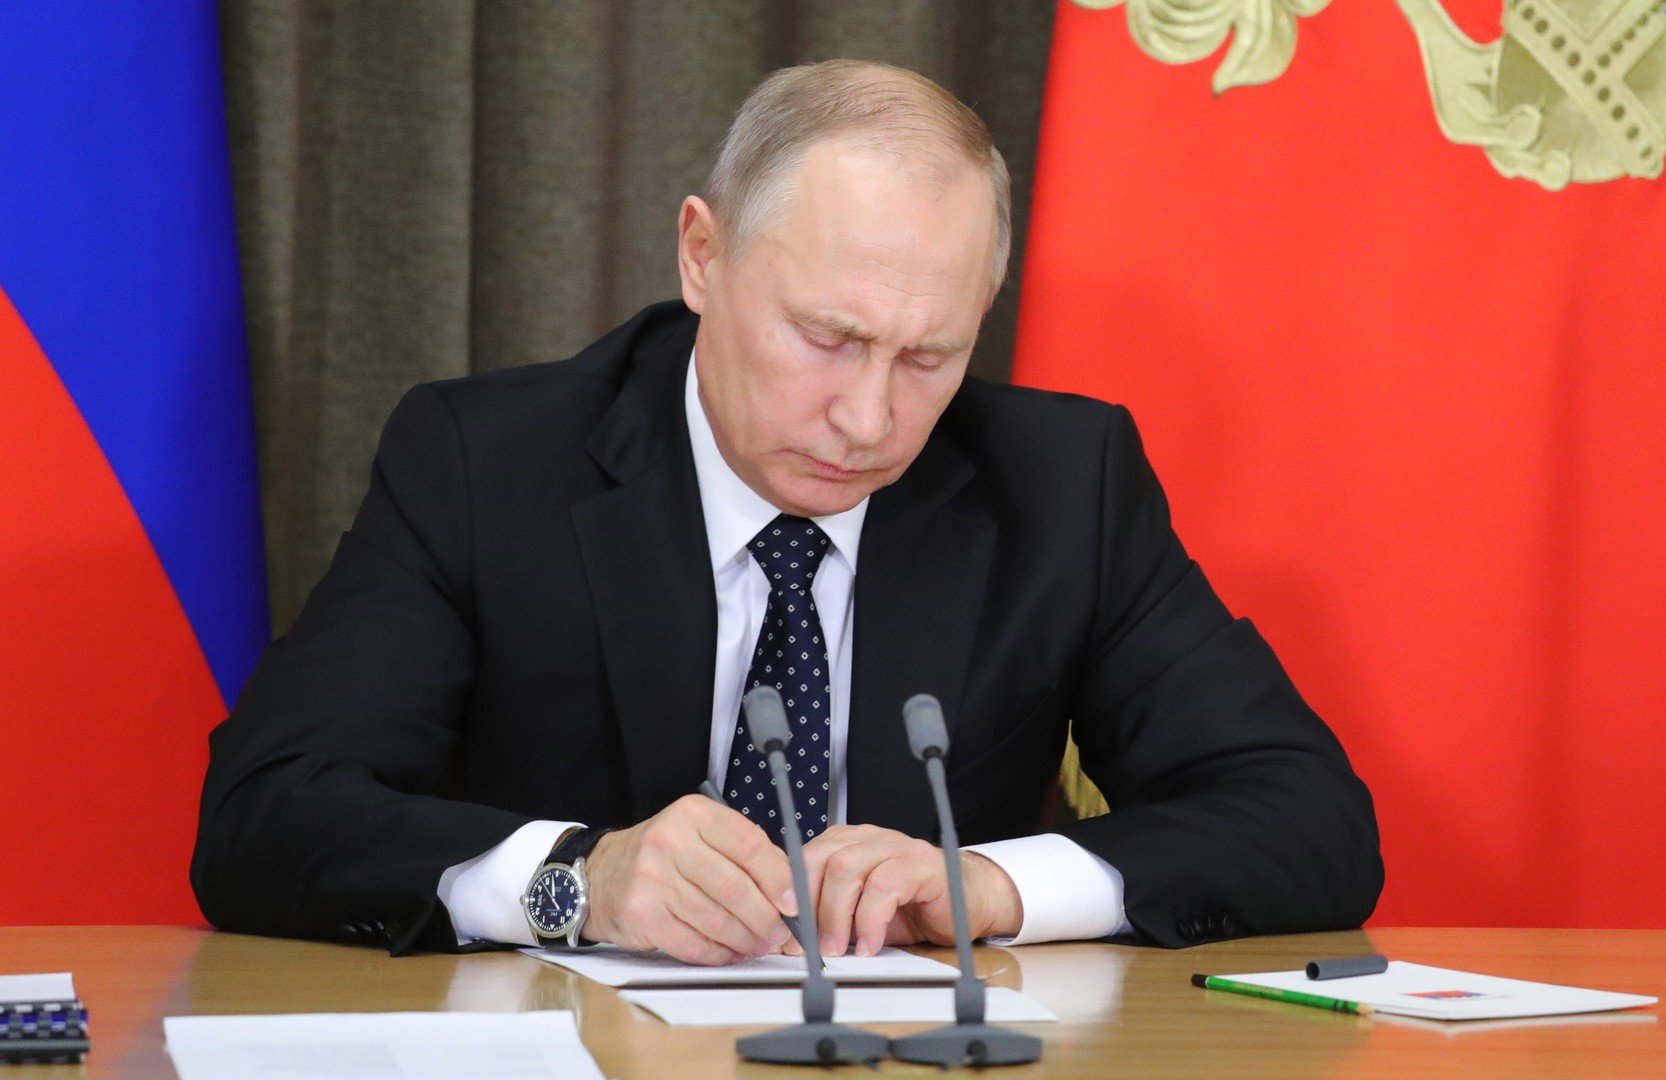 بوتين يوقع مرسوما لتعليق العمل بمعاهدة الصواريخ متوسطة وقصيرة المدى